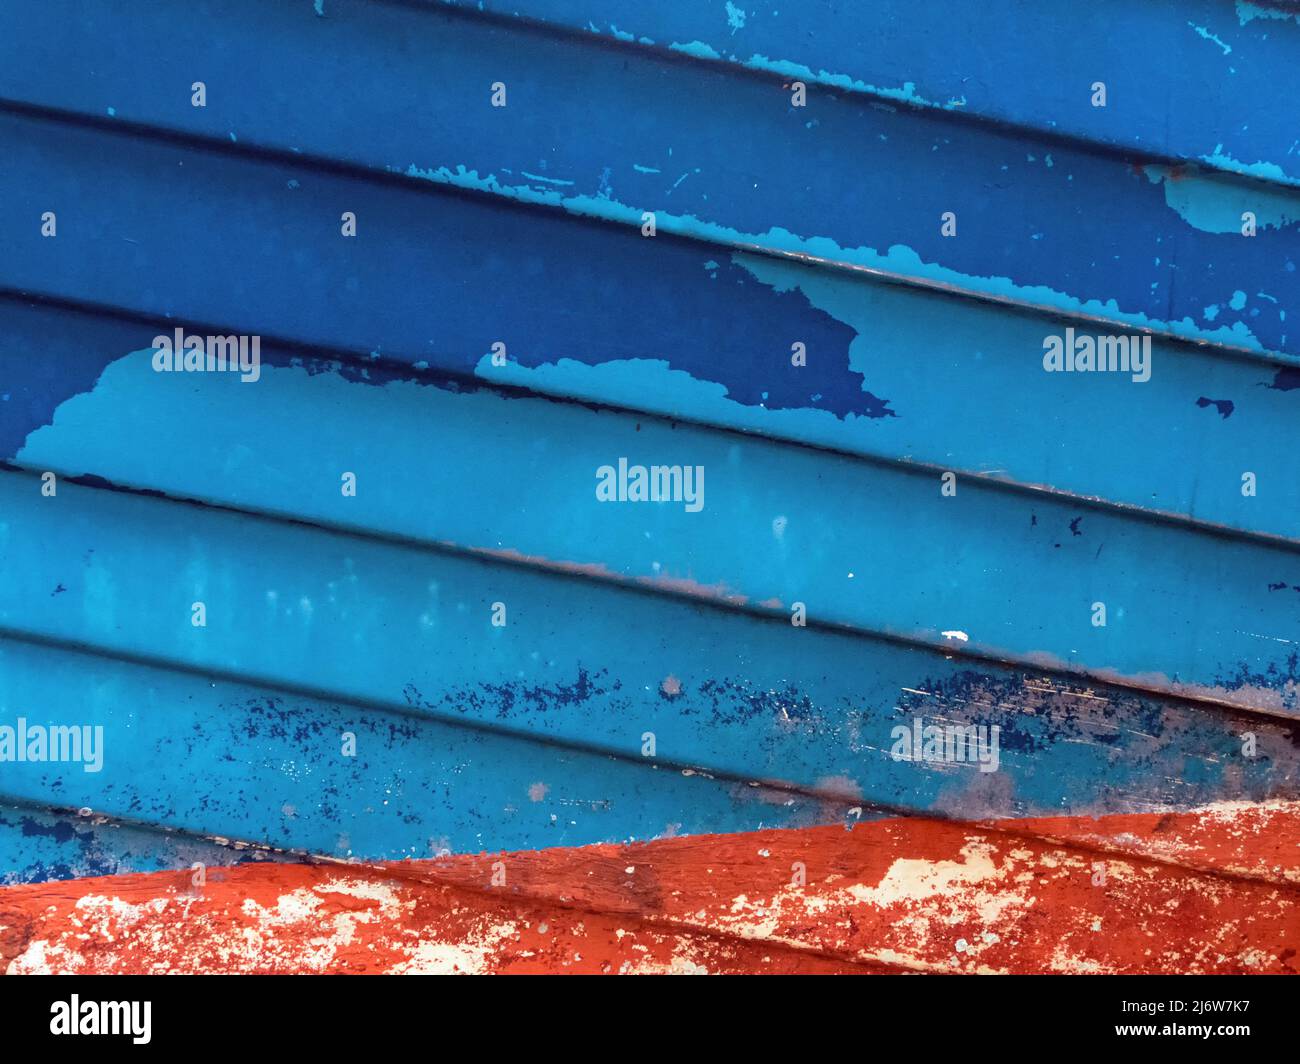 Immagine astratta dello scafo di una nave di colore rosso e blu con vernice da peeling Foto Stock